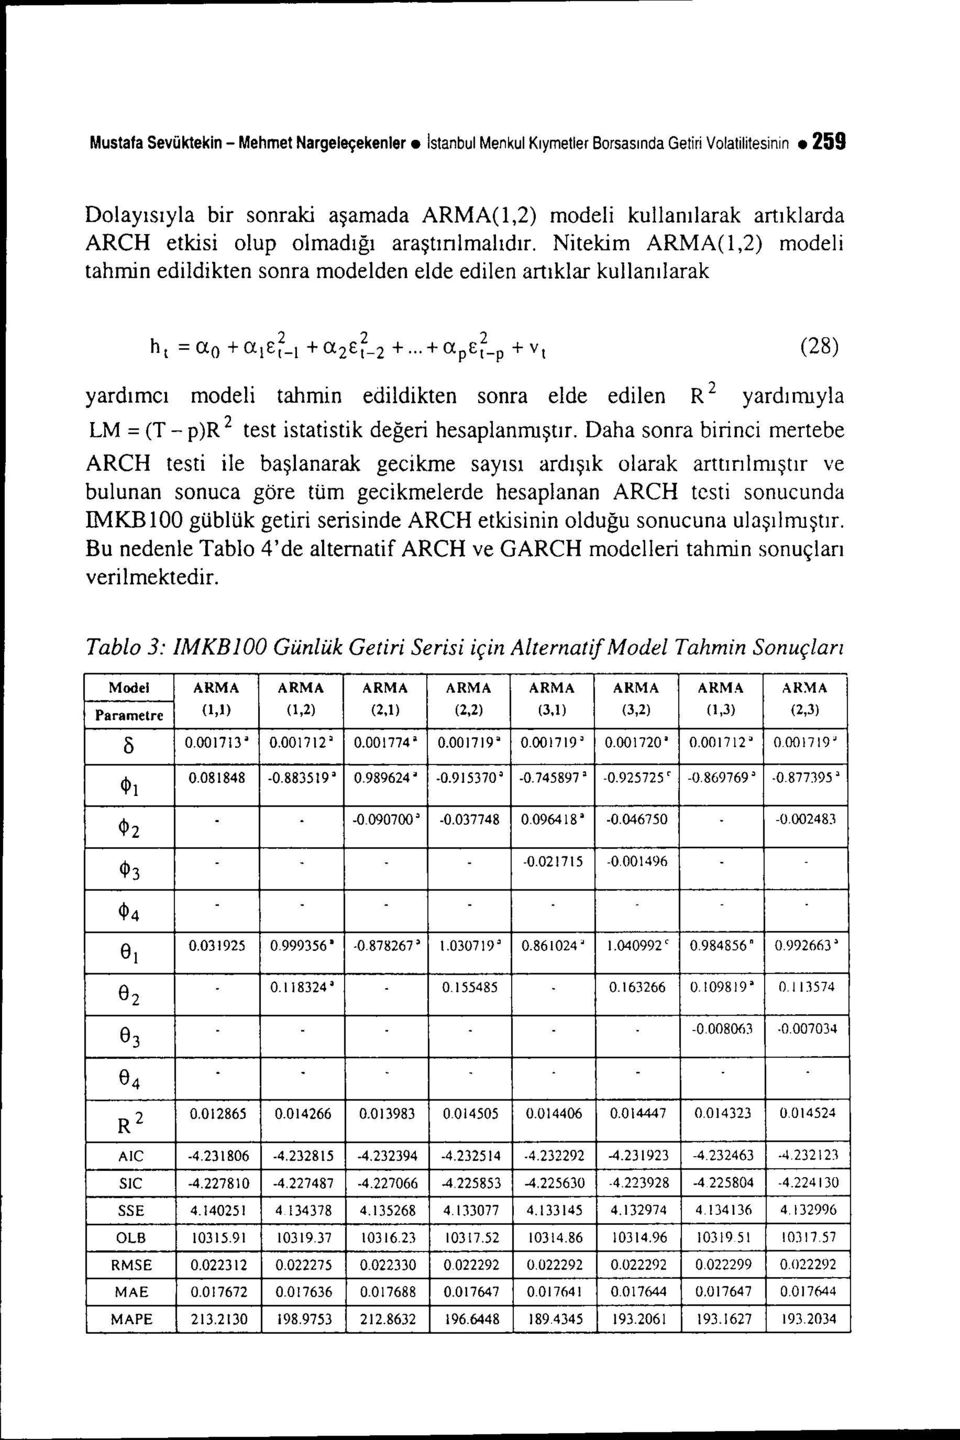 Nitekim ARMA(l,2) modeli tahmin edildikten sonra modelden elde edilen artıklar kullanılarak yardımcı modeli tahmin edildikten sonra elde edilen R 2 yardımıyla LM = (T - p)r 2 test istatistik değeri